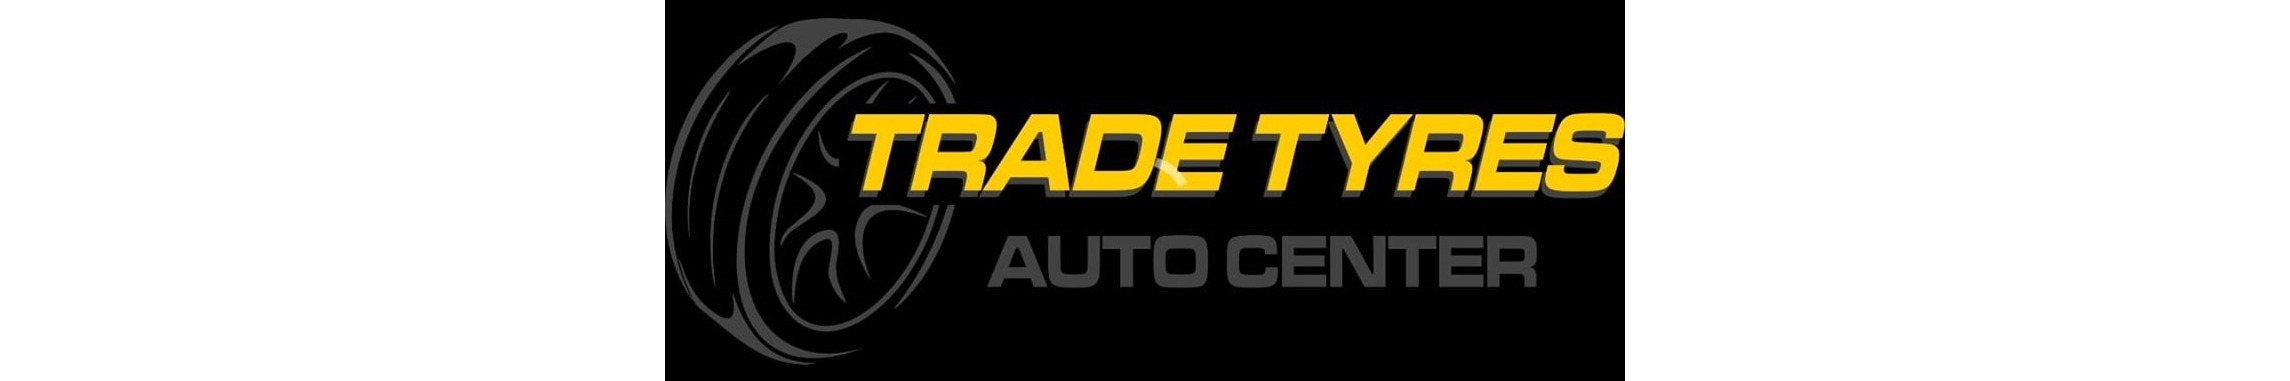 Trade Tyres Auto Center